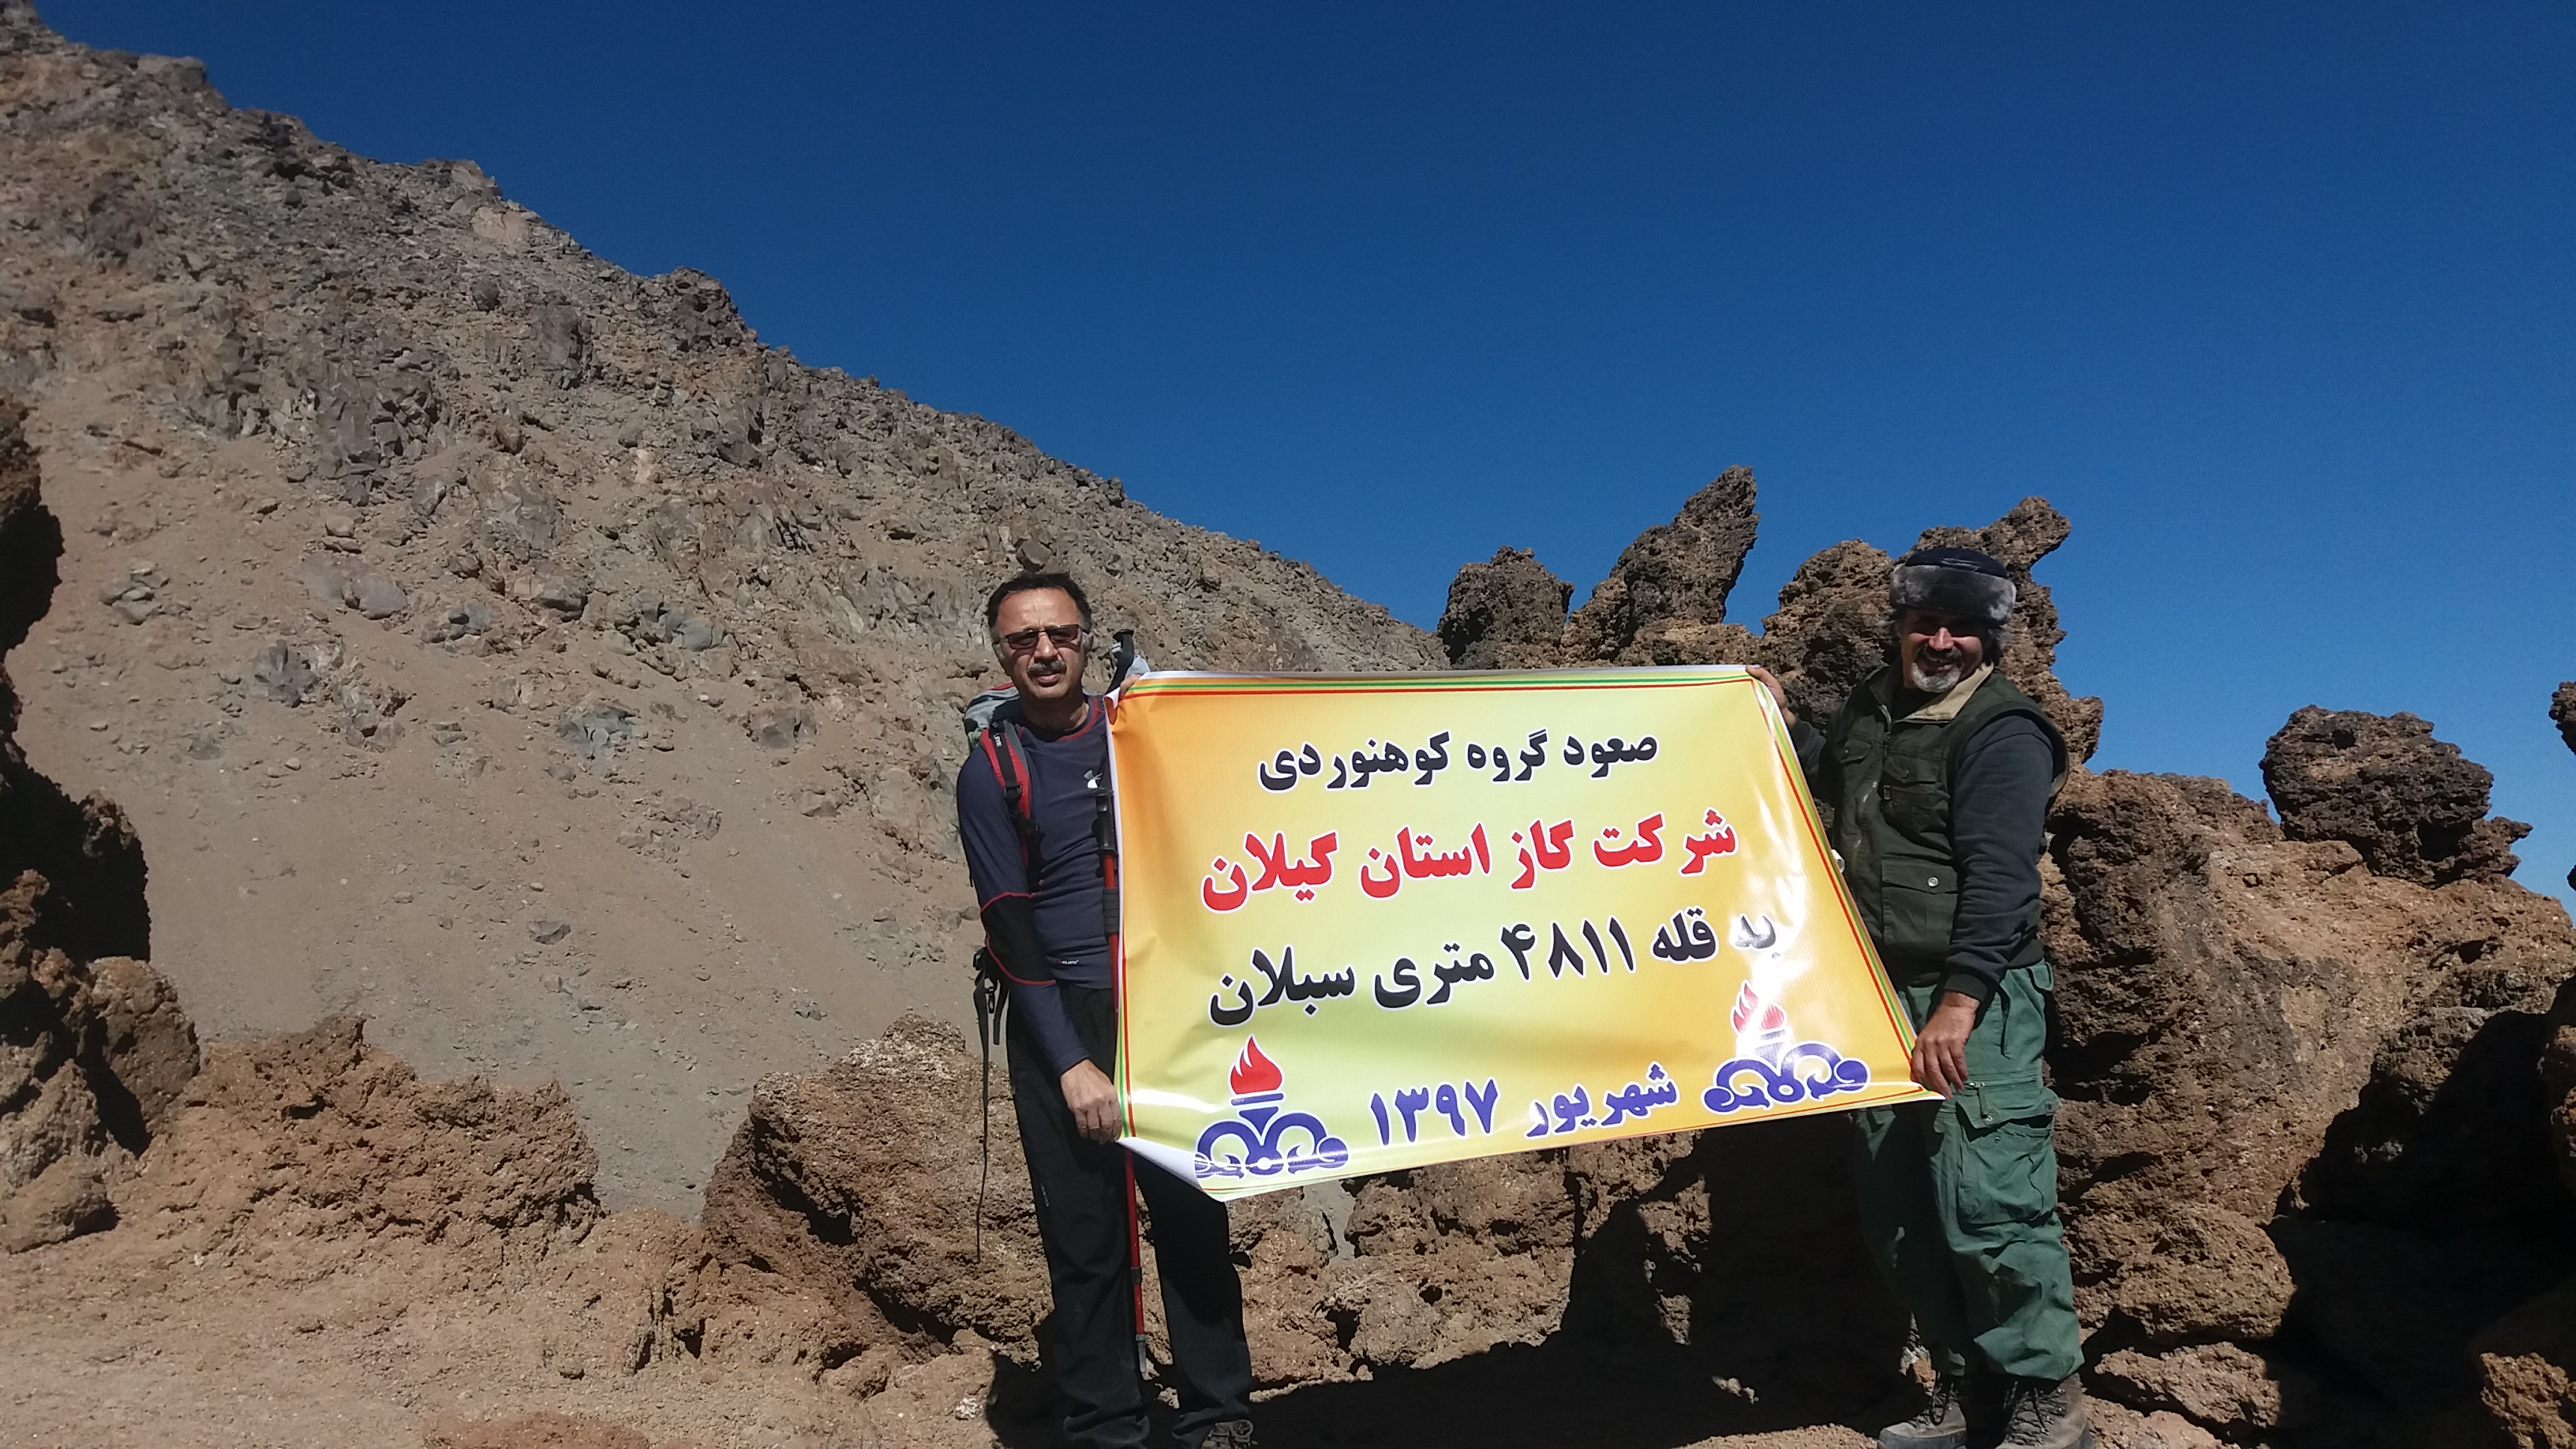 کوهنوردان شرکت گاز استان گیلان به قله سبلان صعود کردند